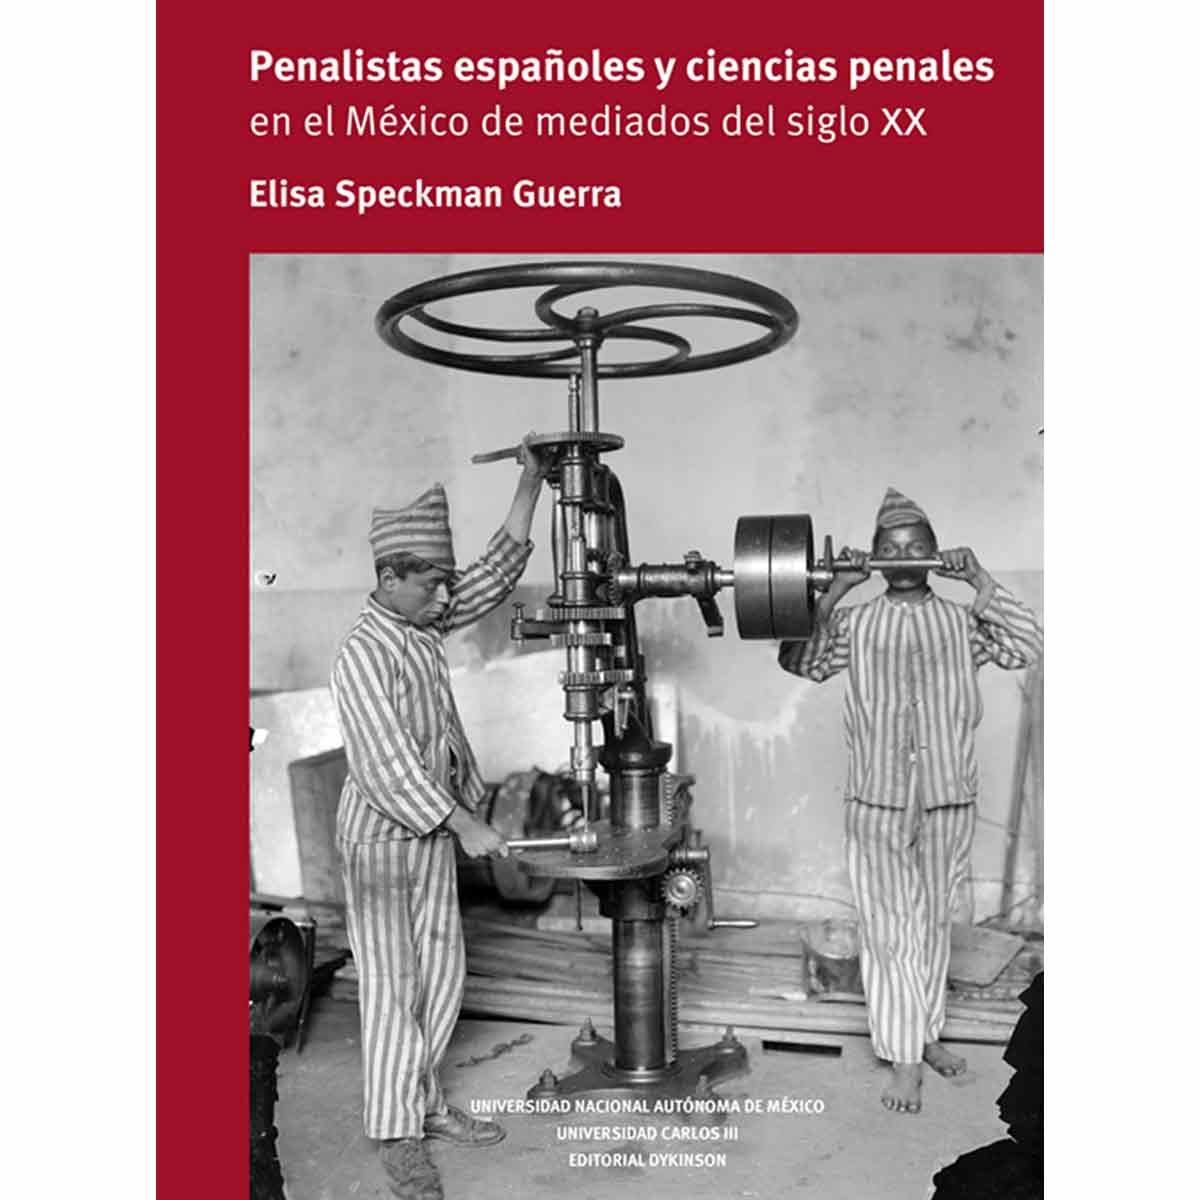 PENALISTAS ESPAÑOLES Y CIENCIAS PENALES EN EL MÉXICO DE MEDIADOS DEL SIGLO XX